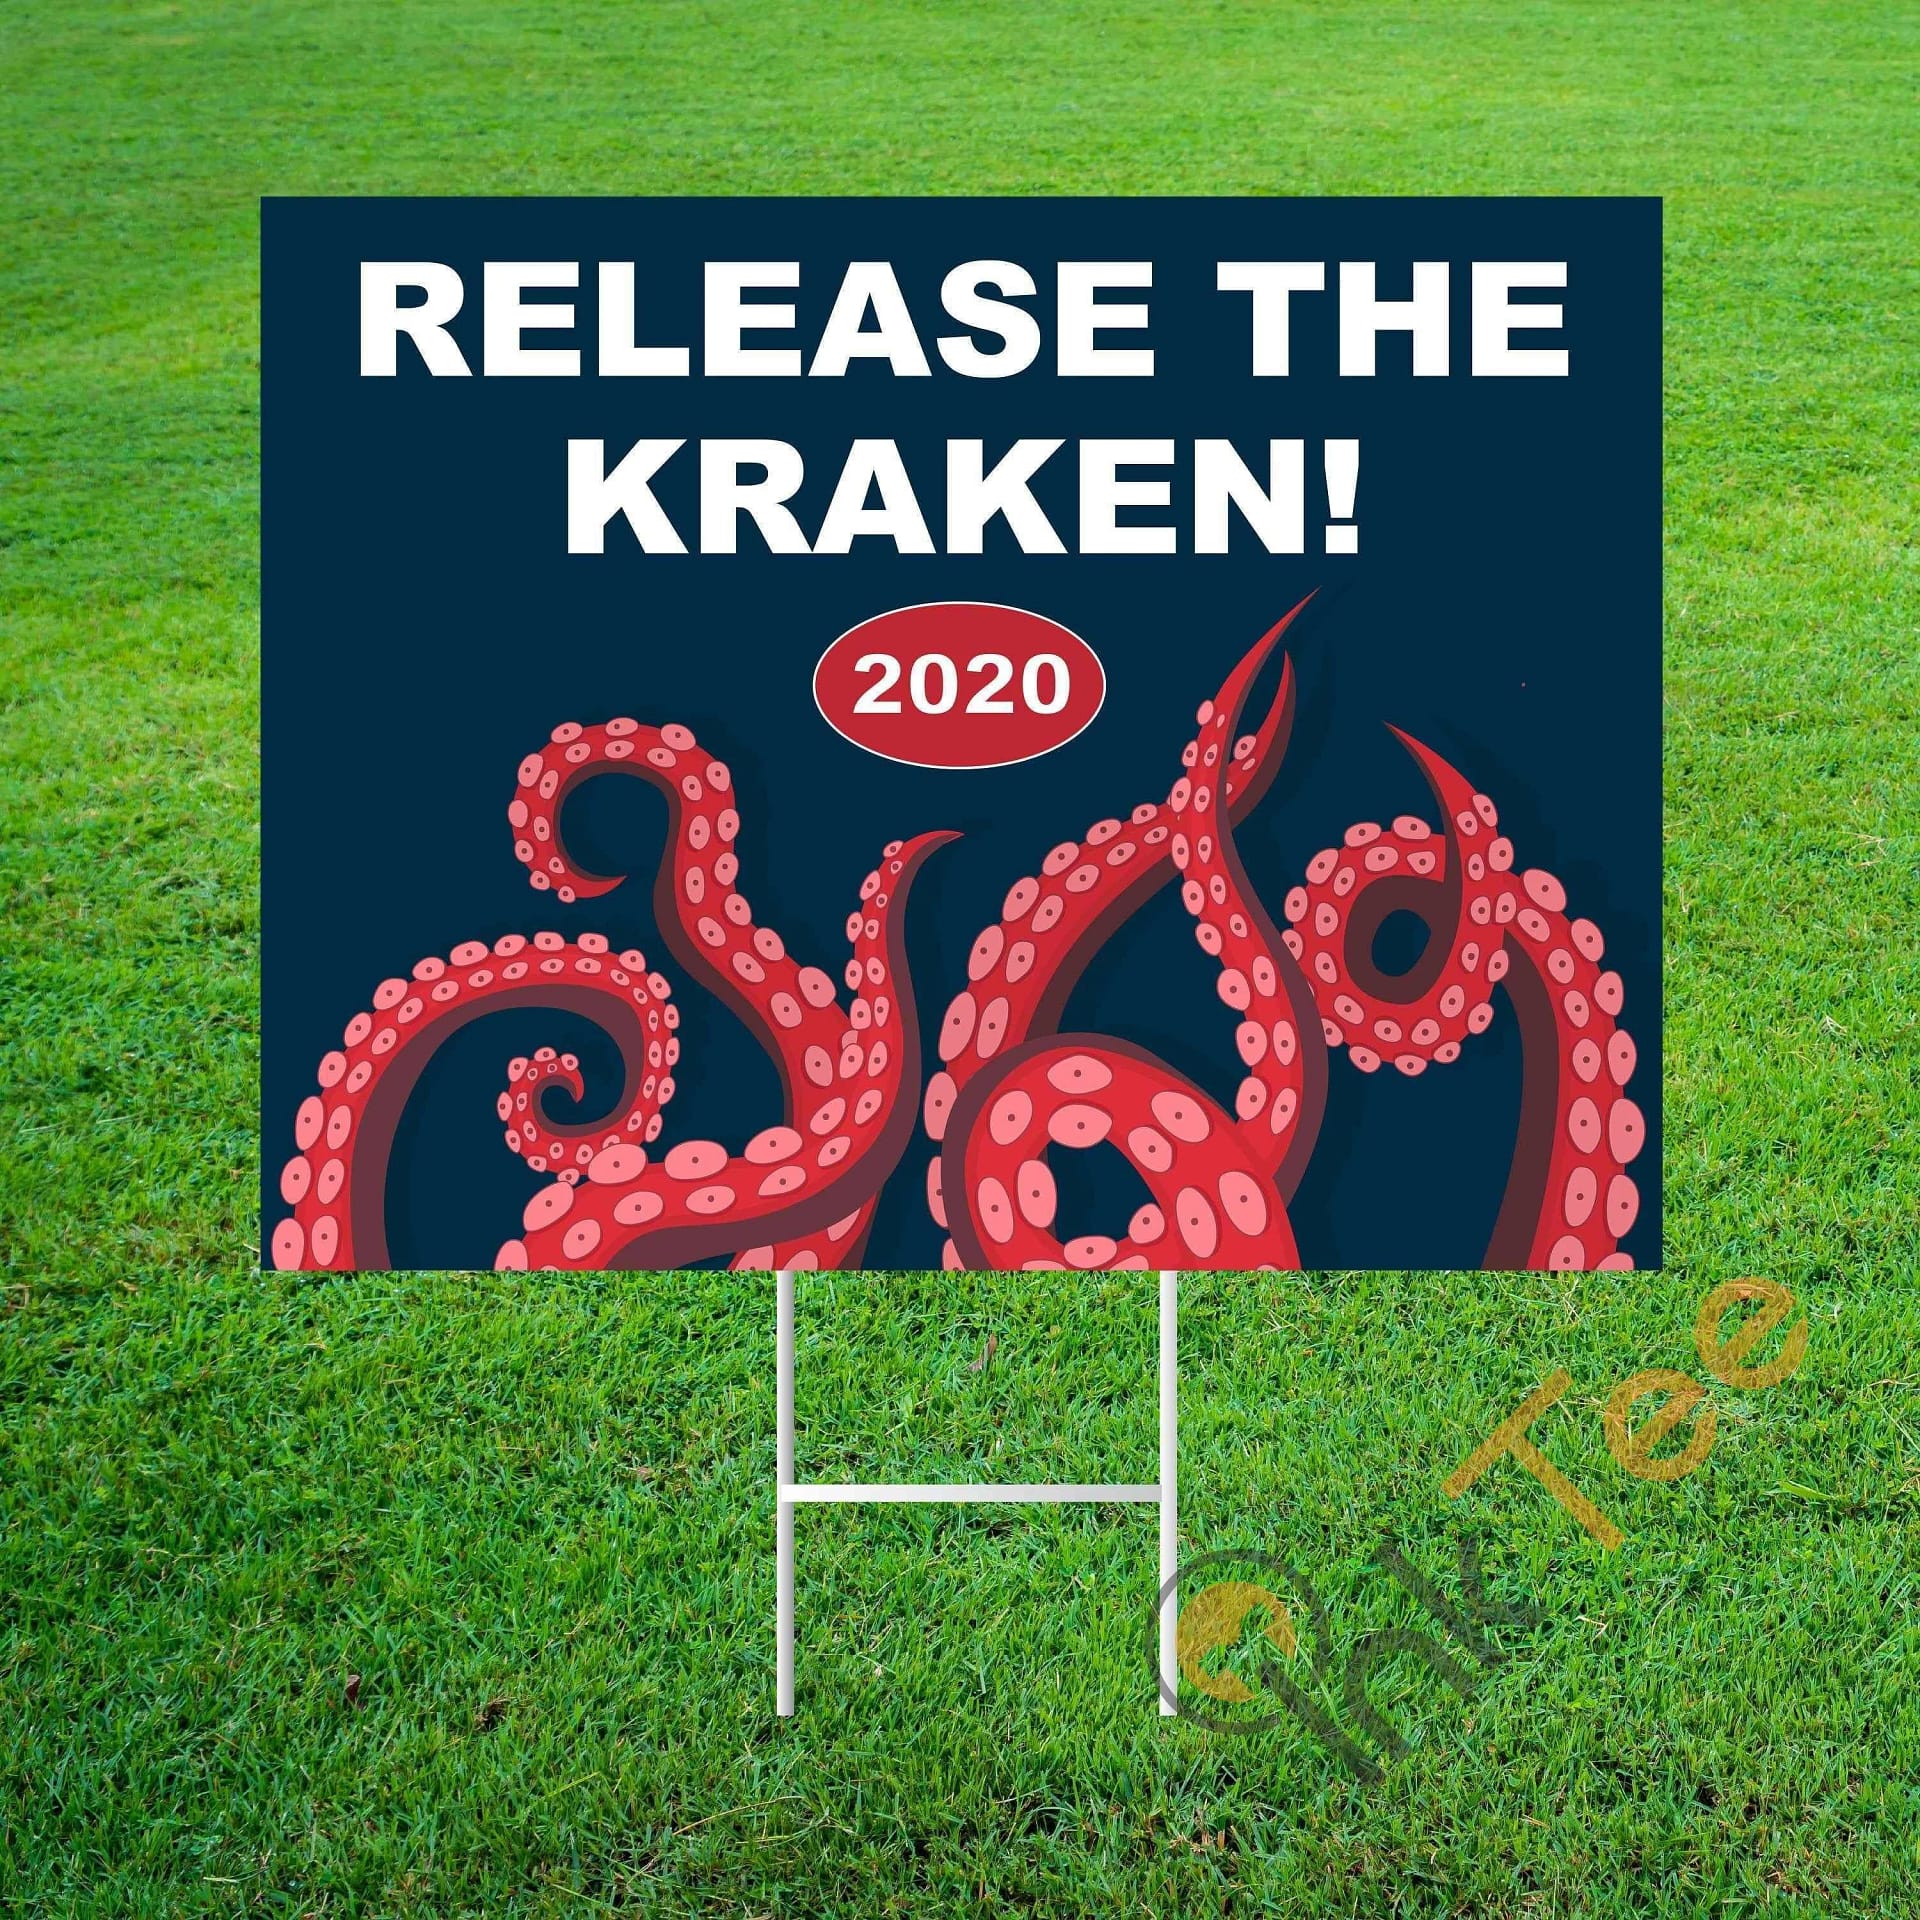 Funny Political Release The Kraken! 2020 Yard Sign